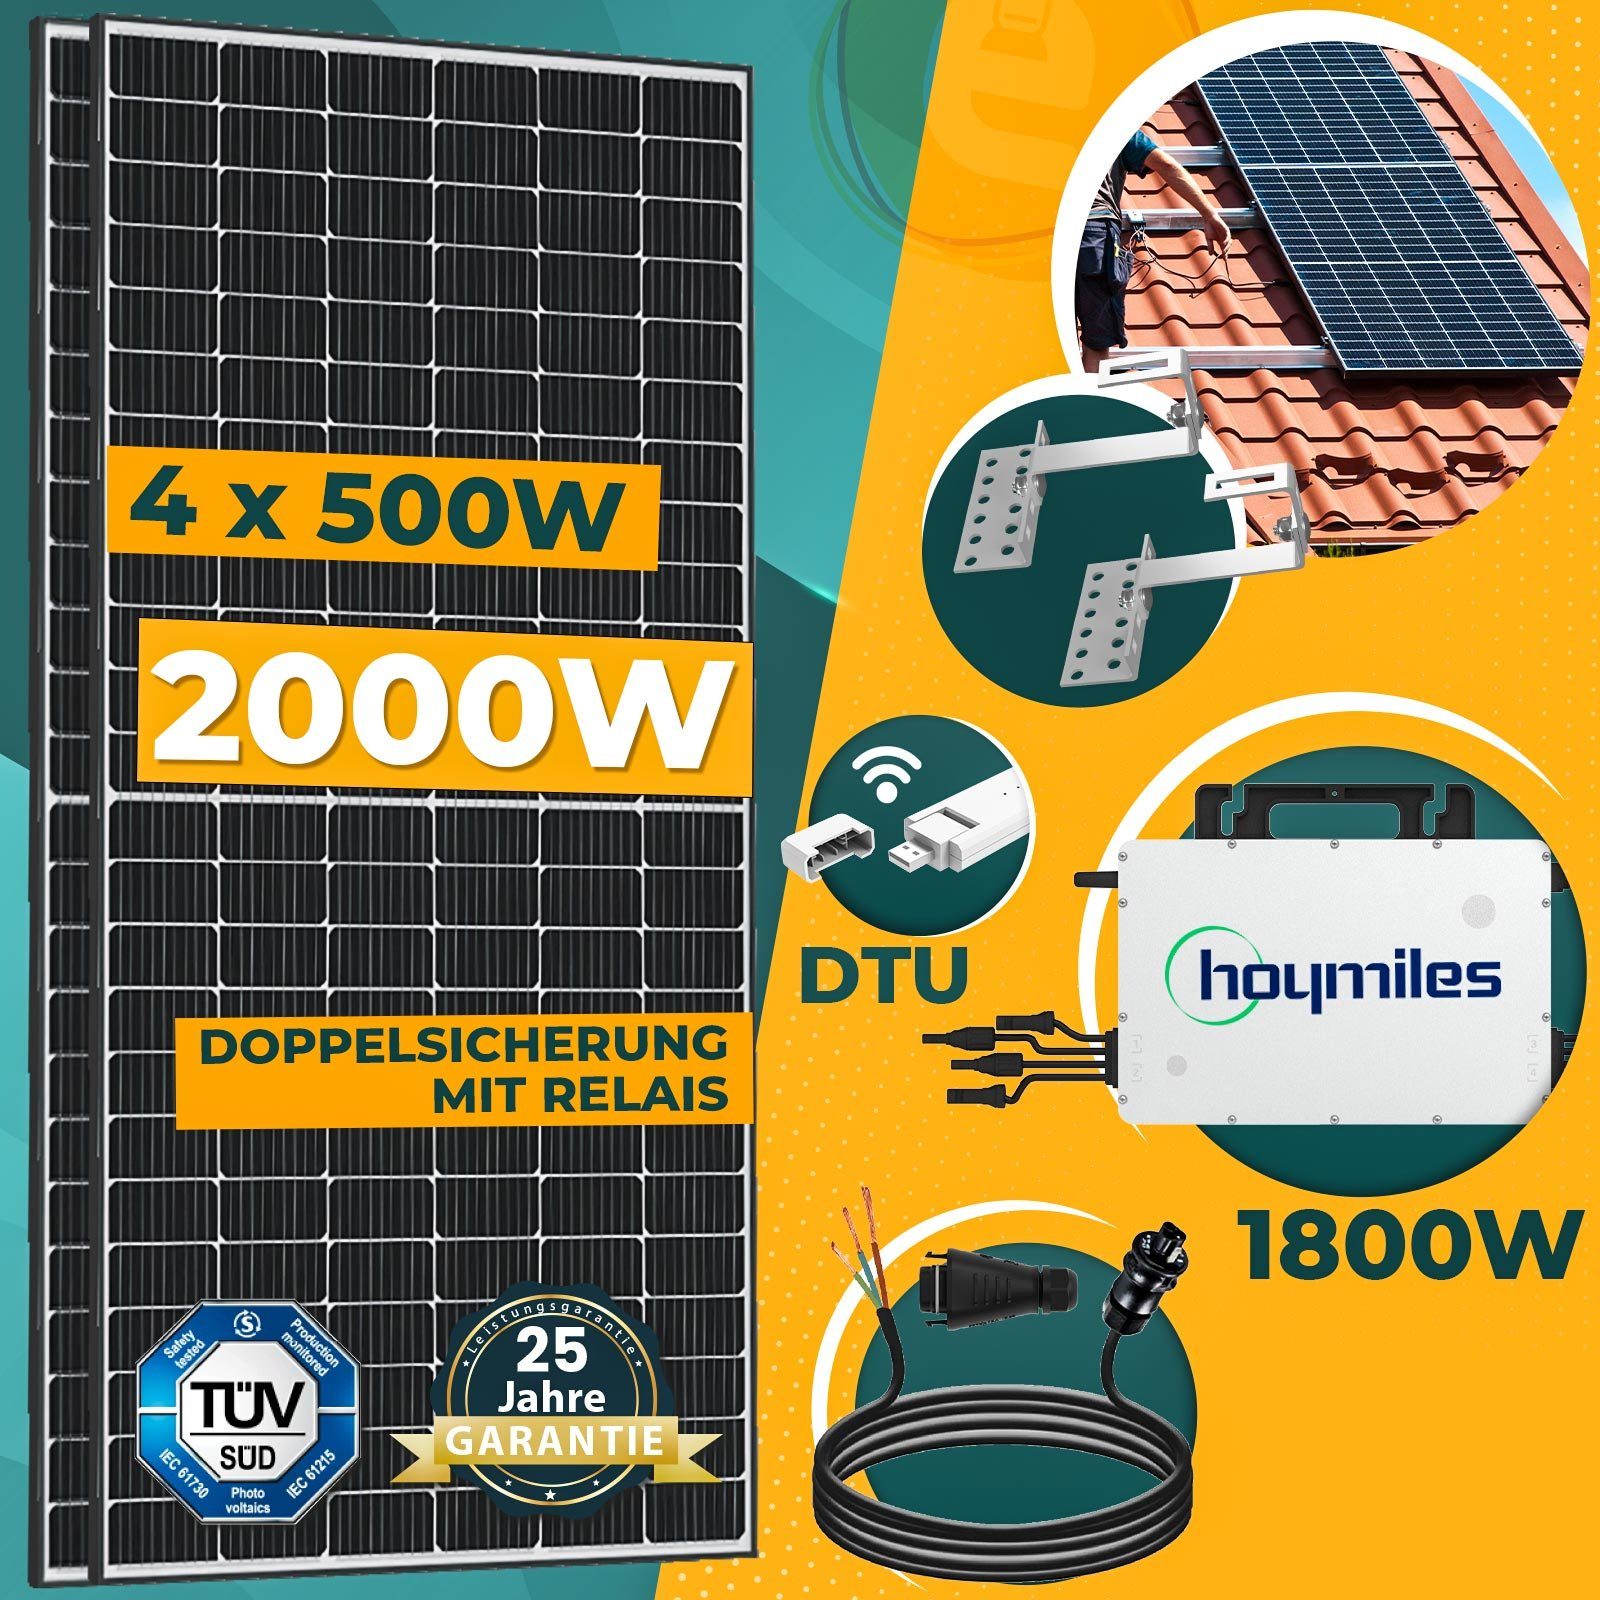 2000W Wechselrichter, Solaranlage Hoymiles 500W enprovesolar inkl. Komplettset PV-Montage Balkonkraftwerk HMS-1800W-4T Solarmodule, und Wielandstecker Ziegeldach DTU-Wlite-S, 10M